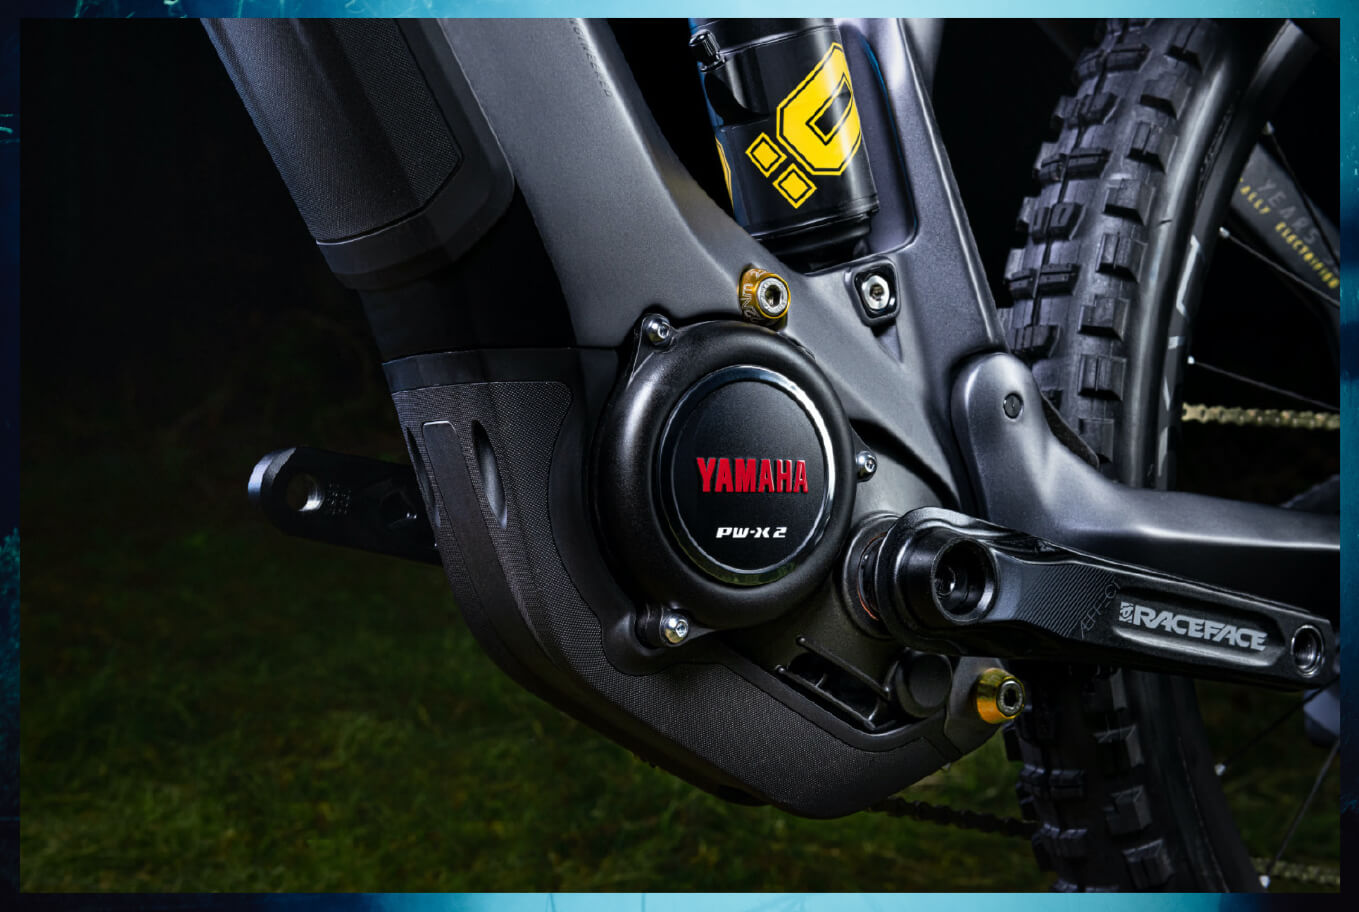 Haibike AllMtn SE detail image of Yamaha PW-X2 engine